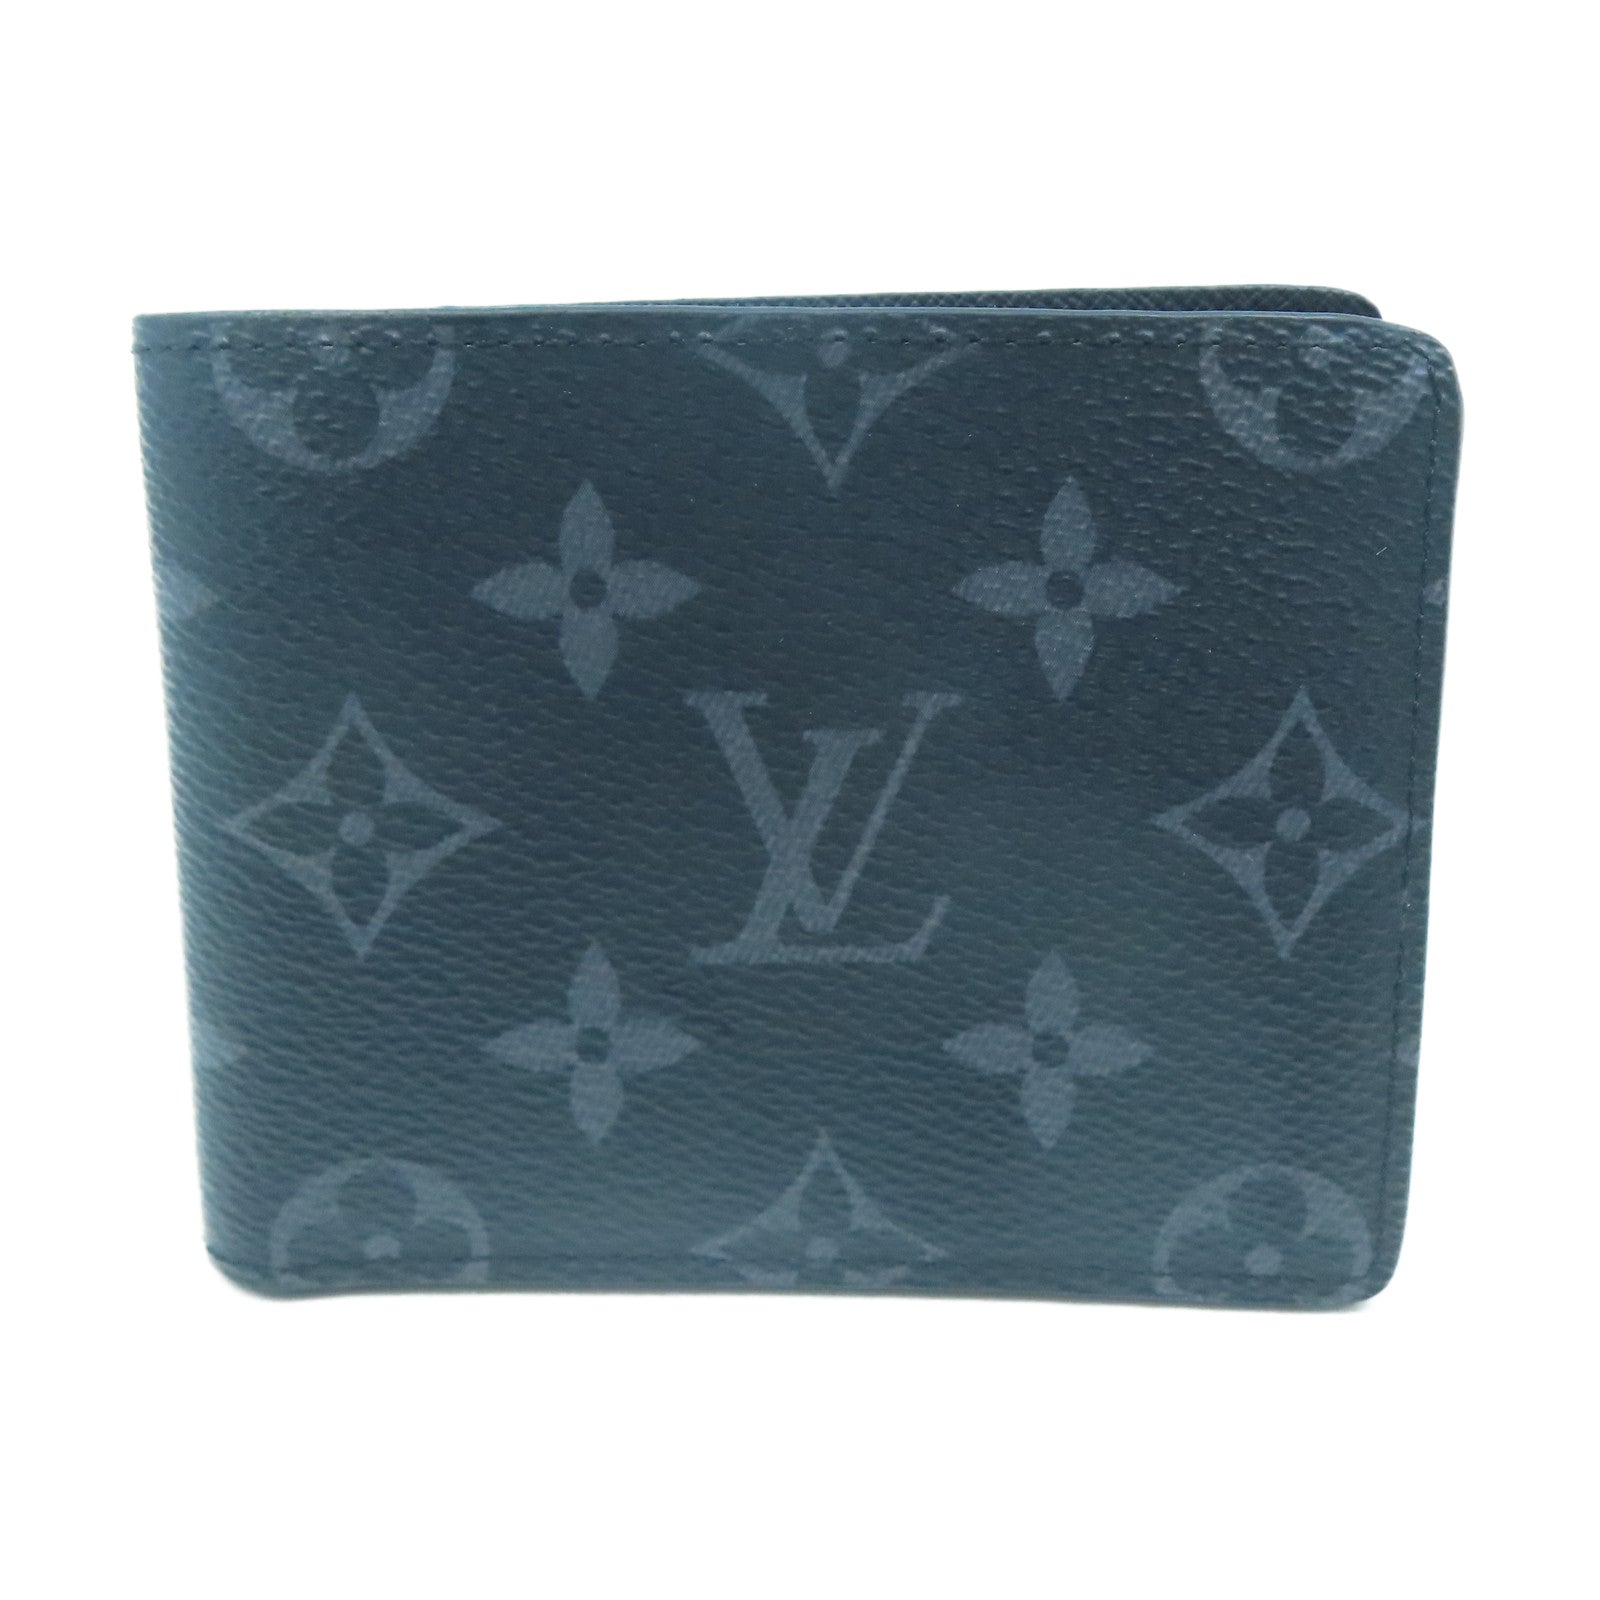 Louis Vuitton Slender Wallet Monogram Esclip